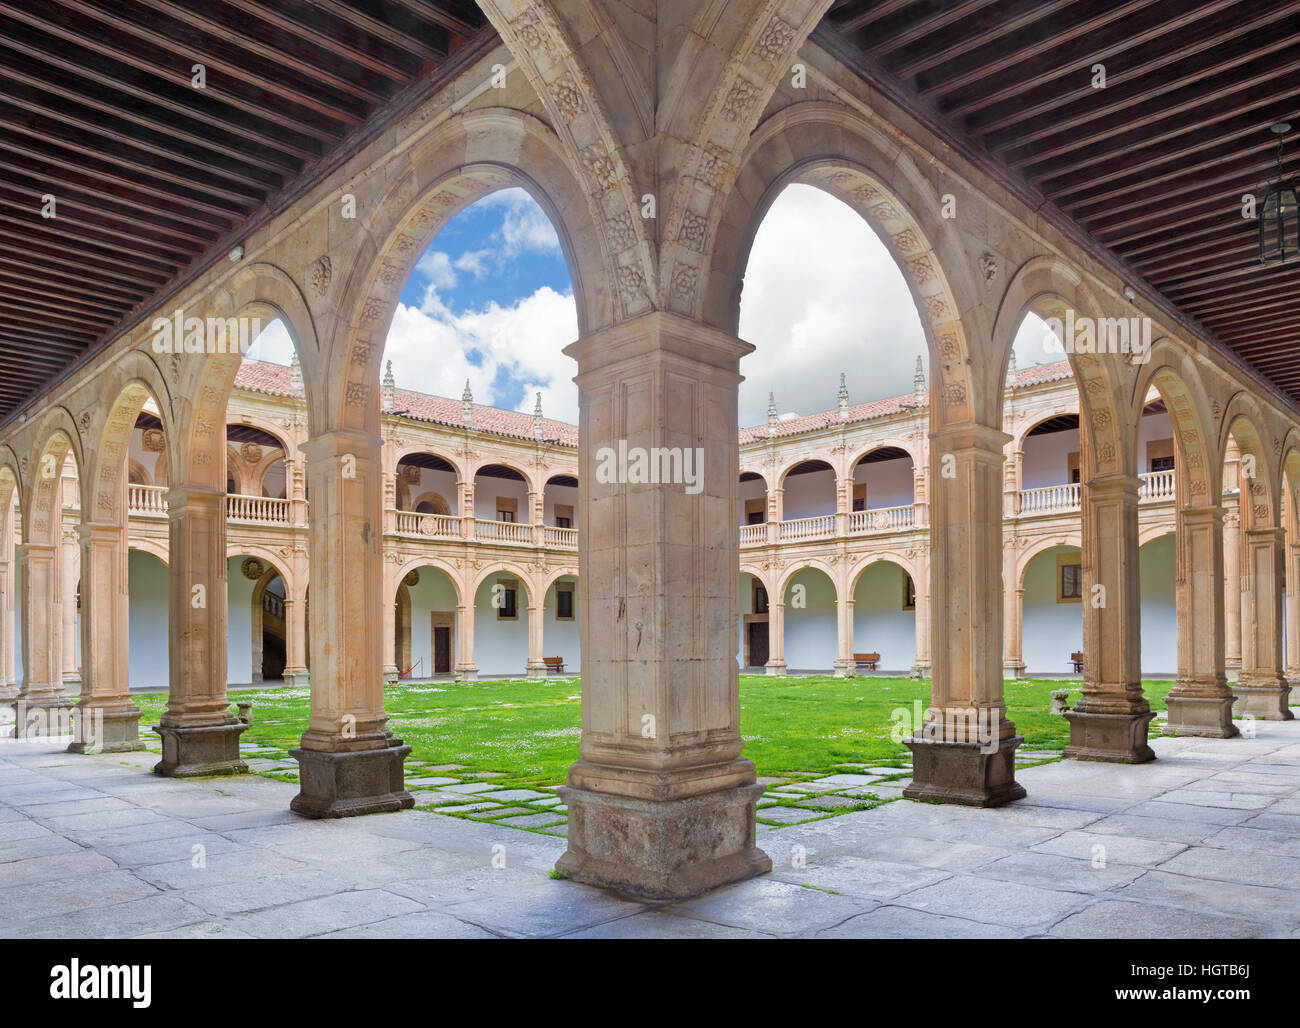 SALAMANCA, SPAIN, APRIL - 17, 2016: The atrium of Colegio Arzobispo Fonseca. Stock Photo